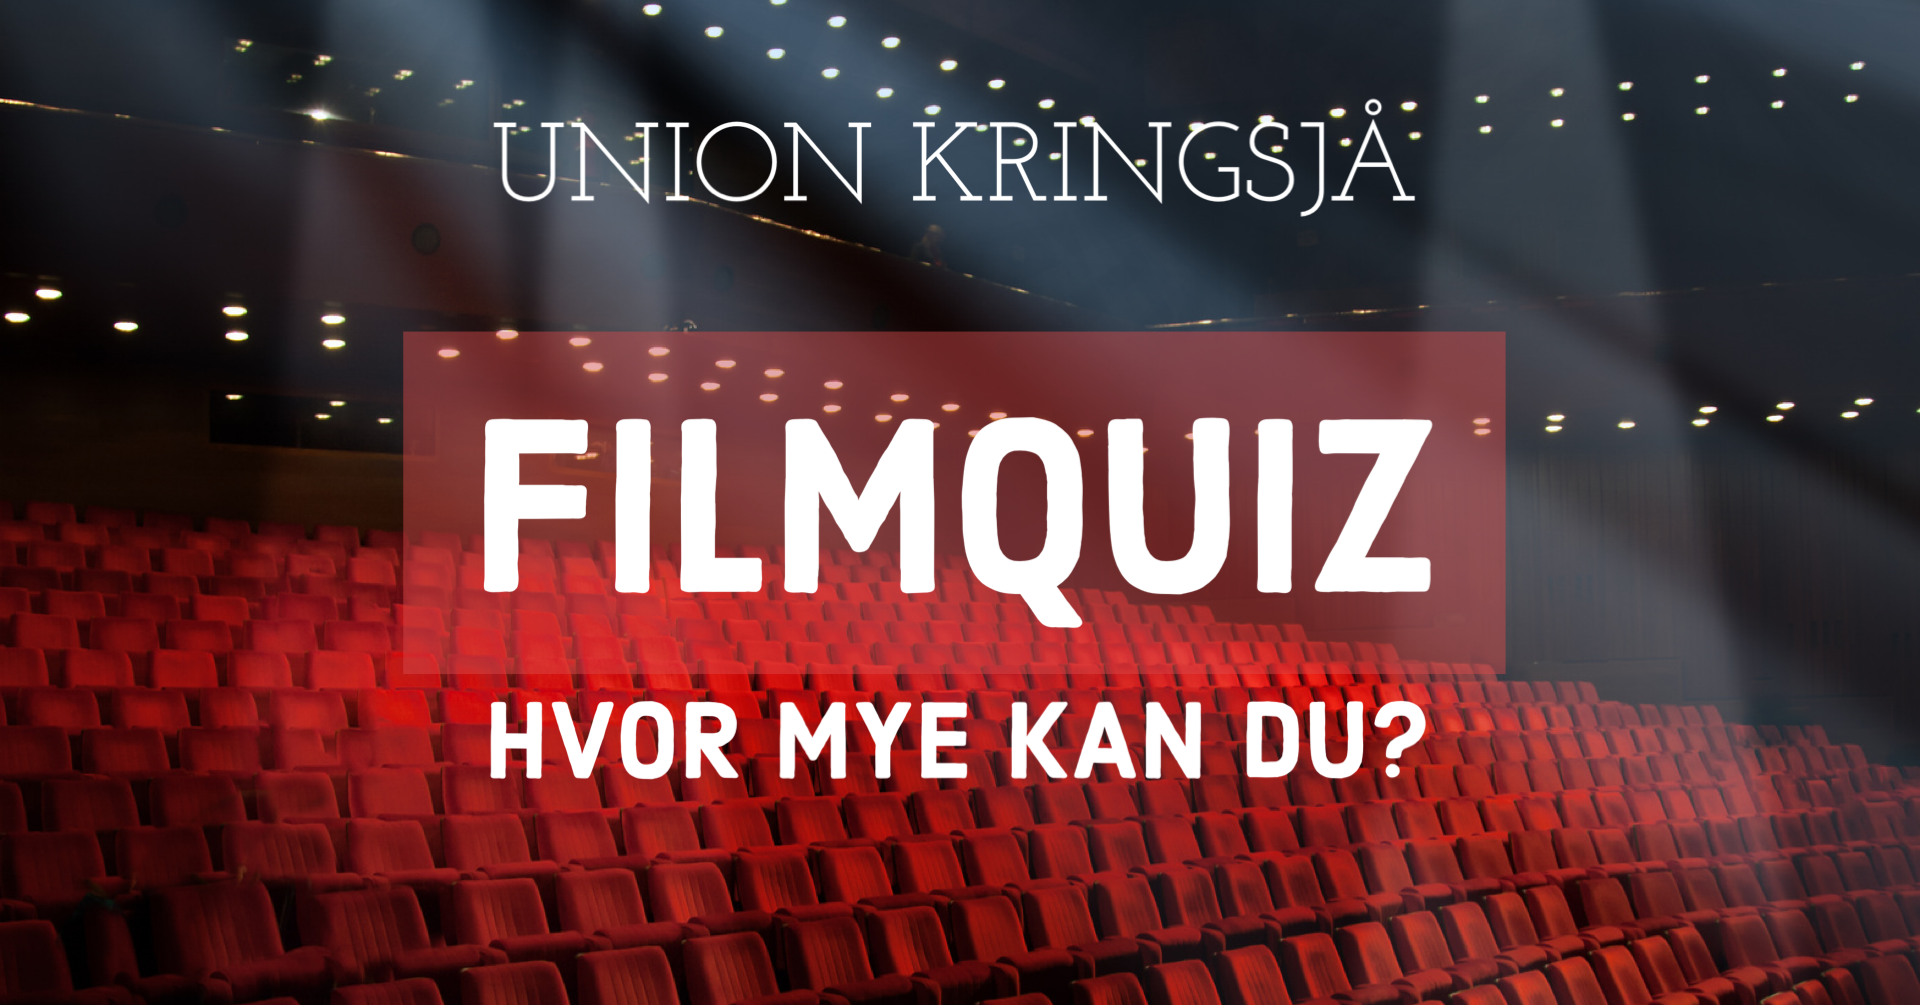 Filmquiz Union Kringsjå